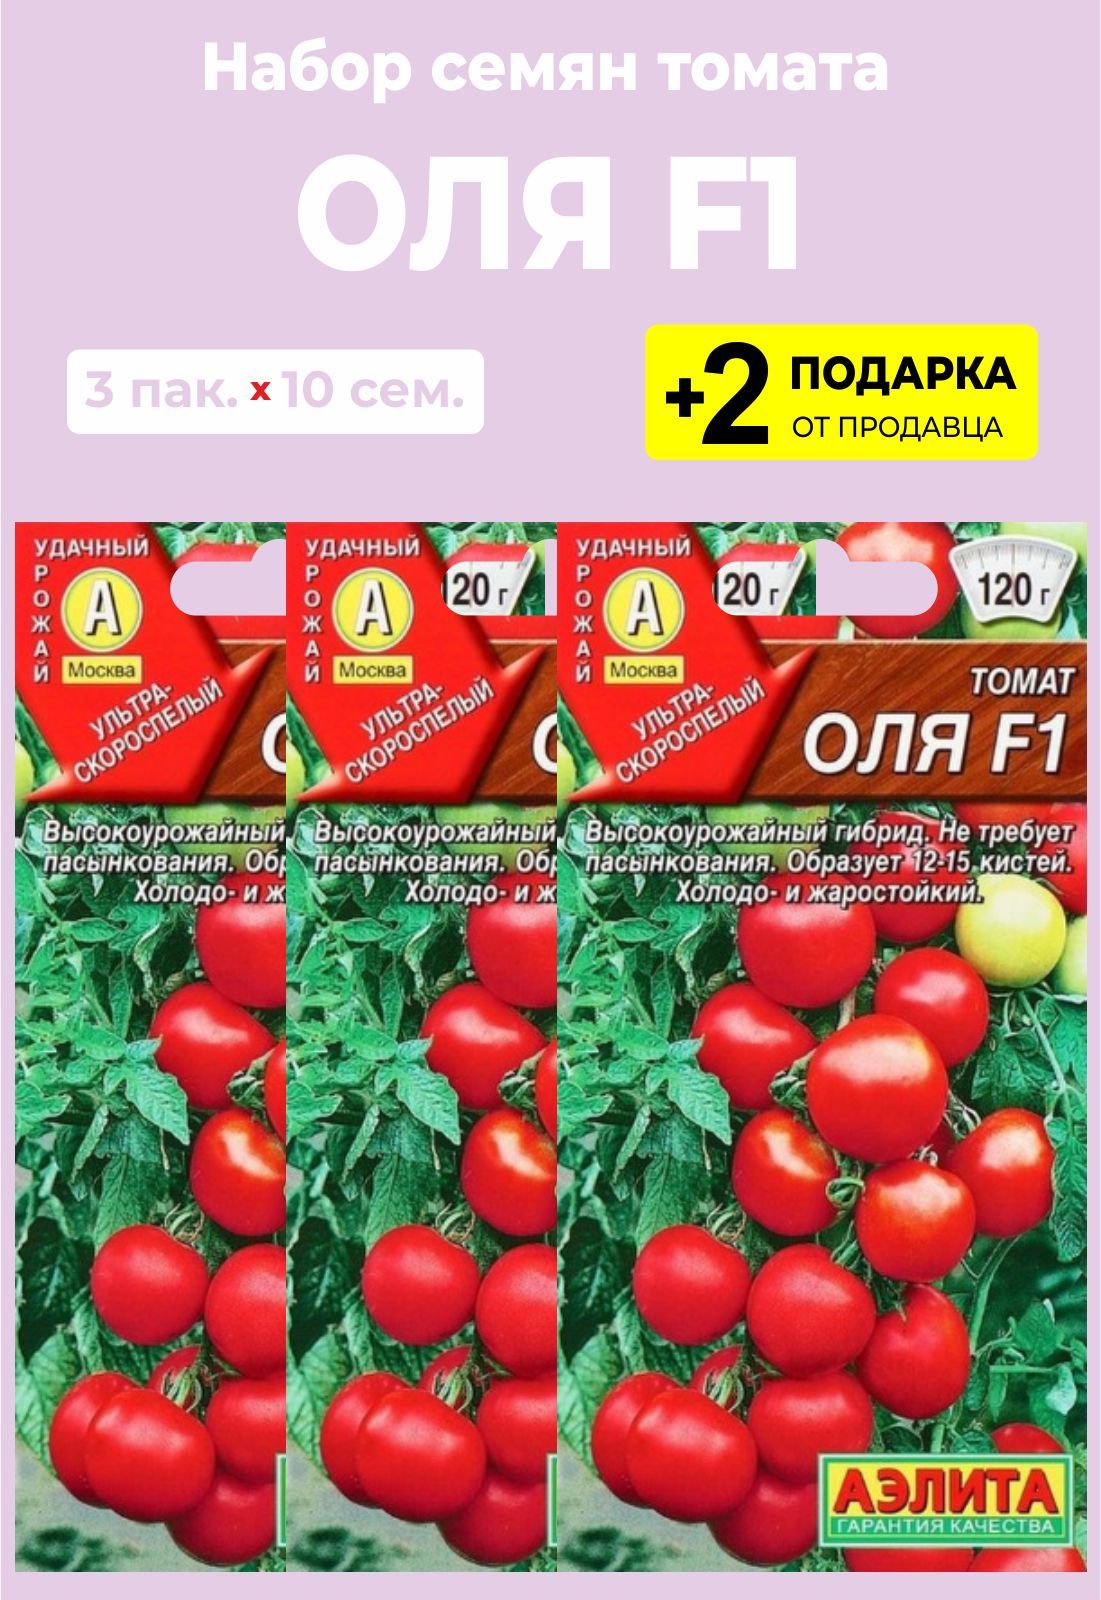 Сорт томатов оля f1 отзывы. Томат Оля f1.